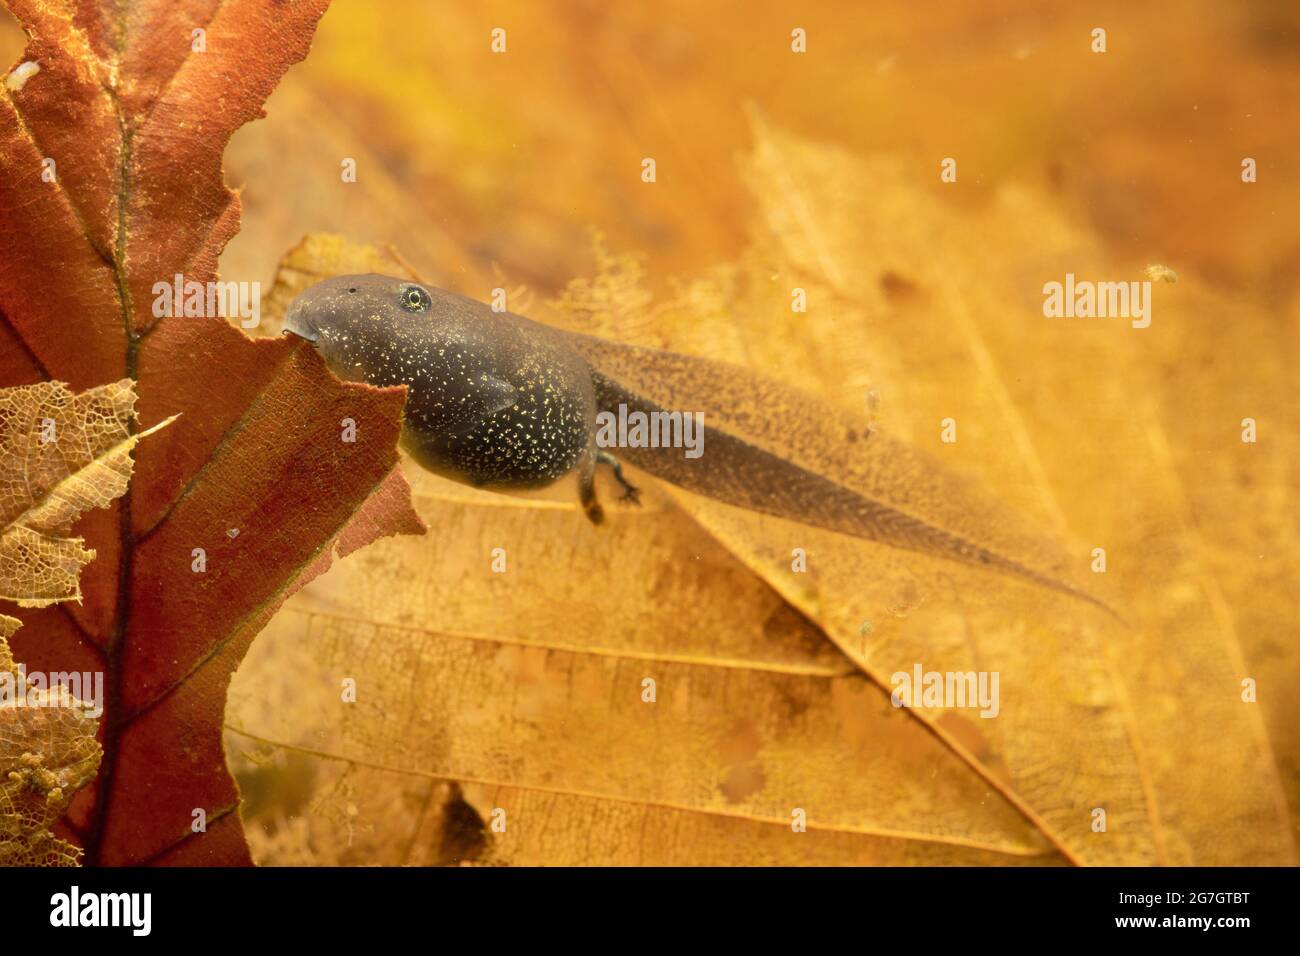 Rana común, rana de pasto (Rana temporaria), tadpole que alimenta la hoja caída bajo el agua, Alemania Foto de stock